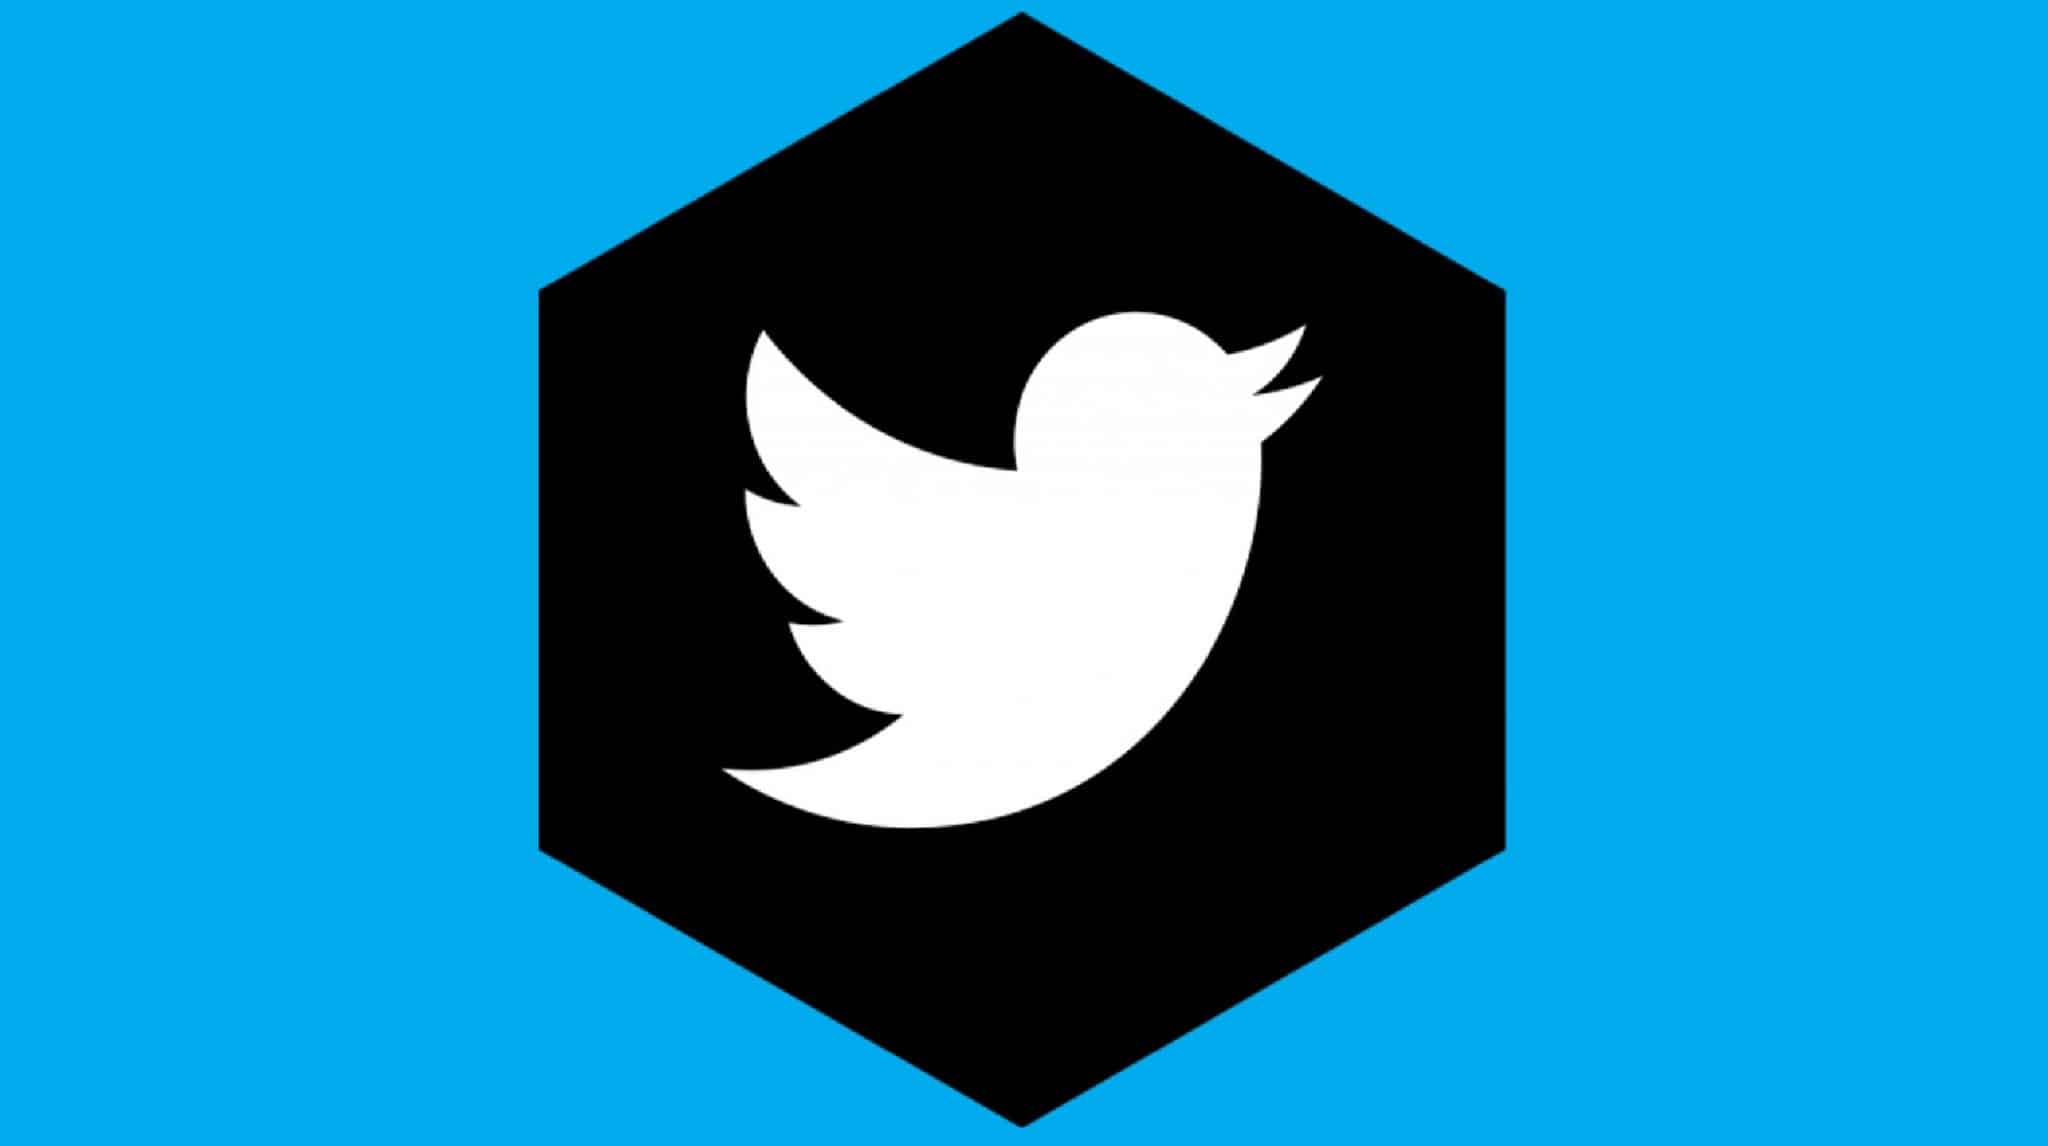 twitter logo black circle